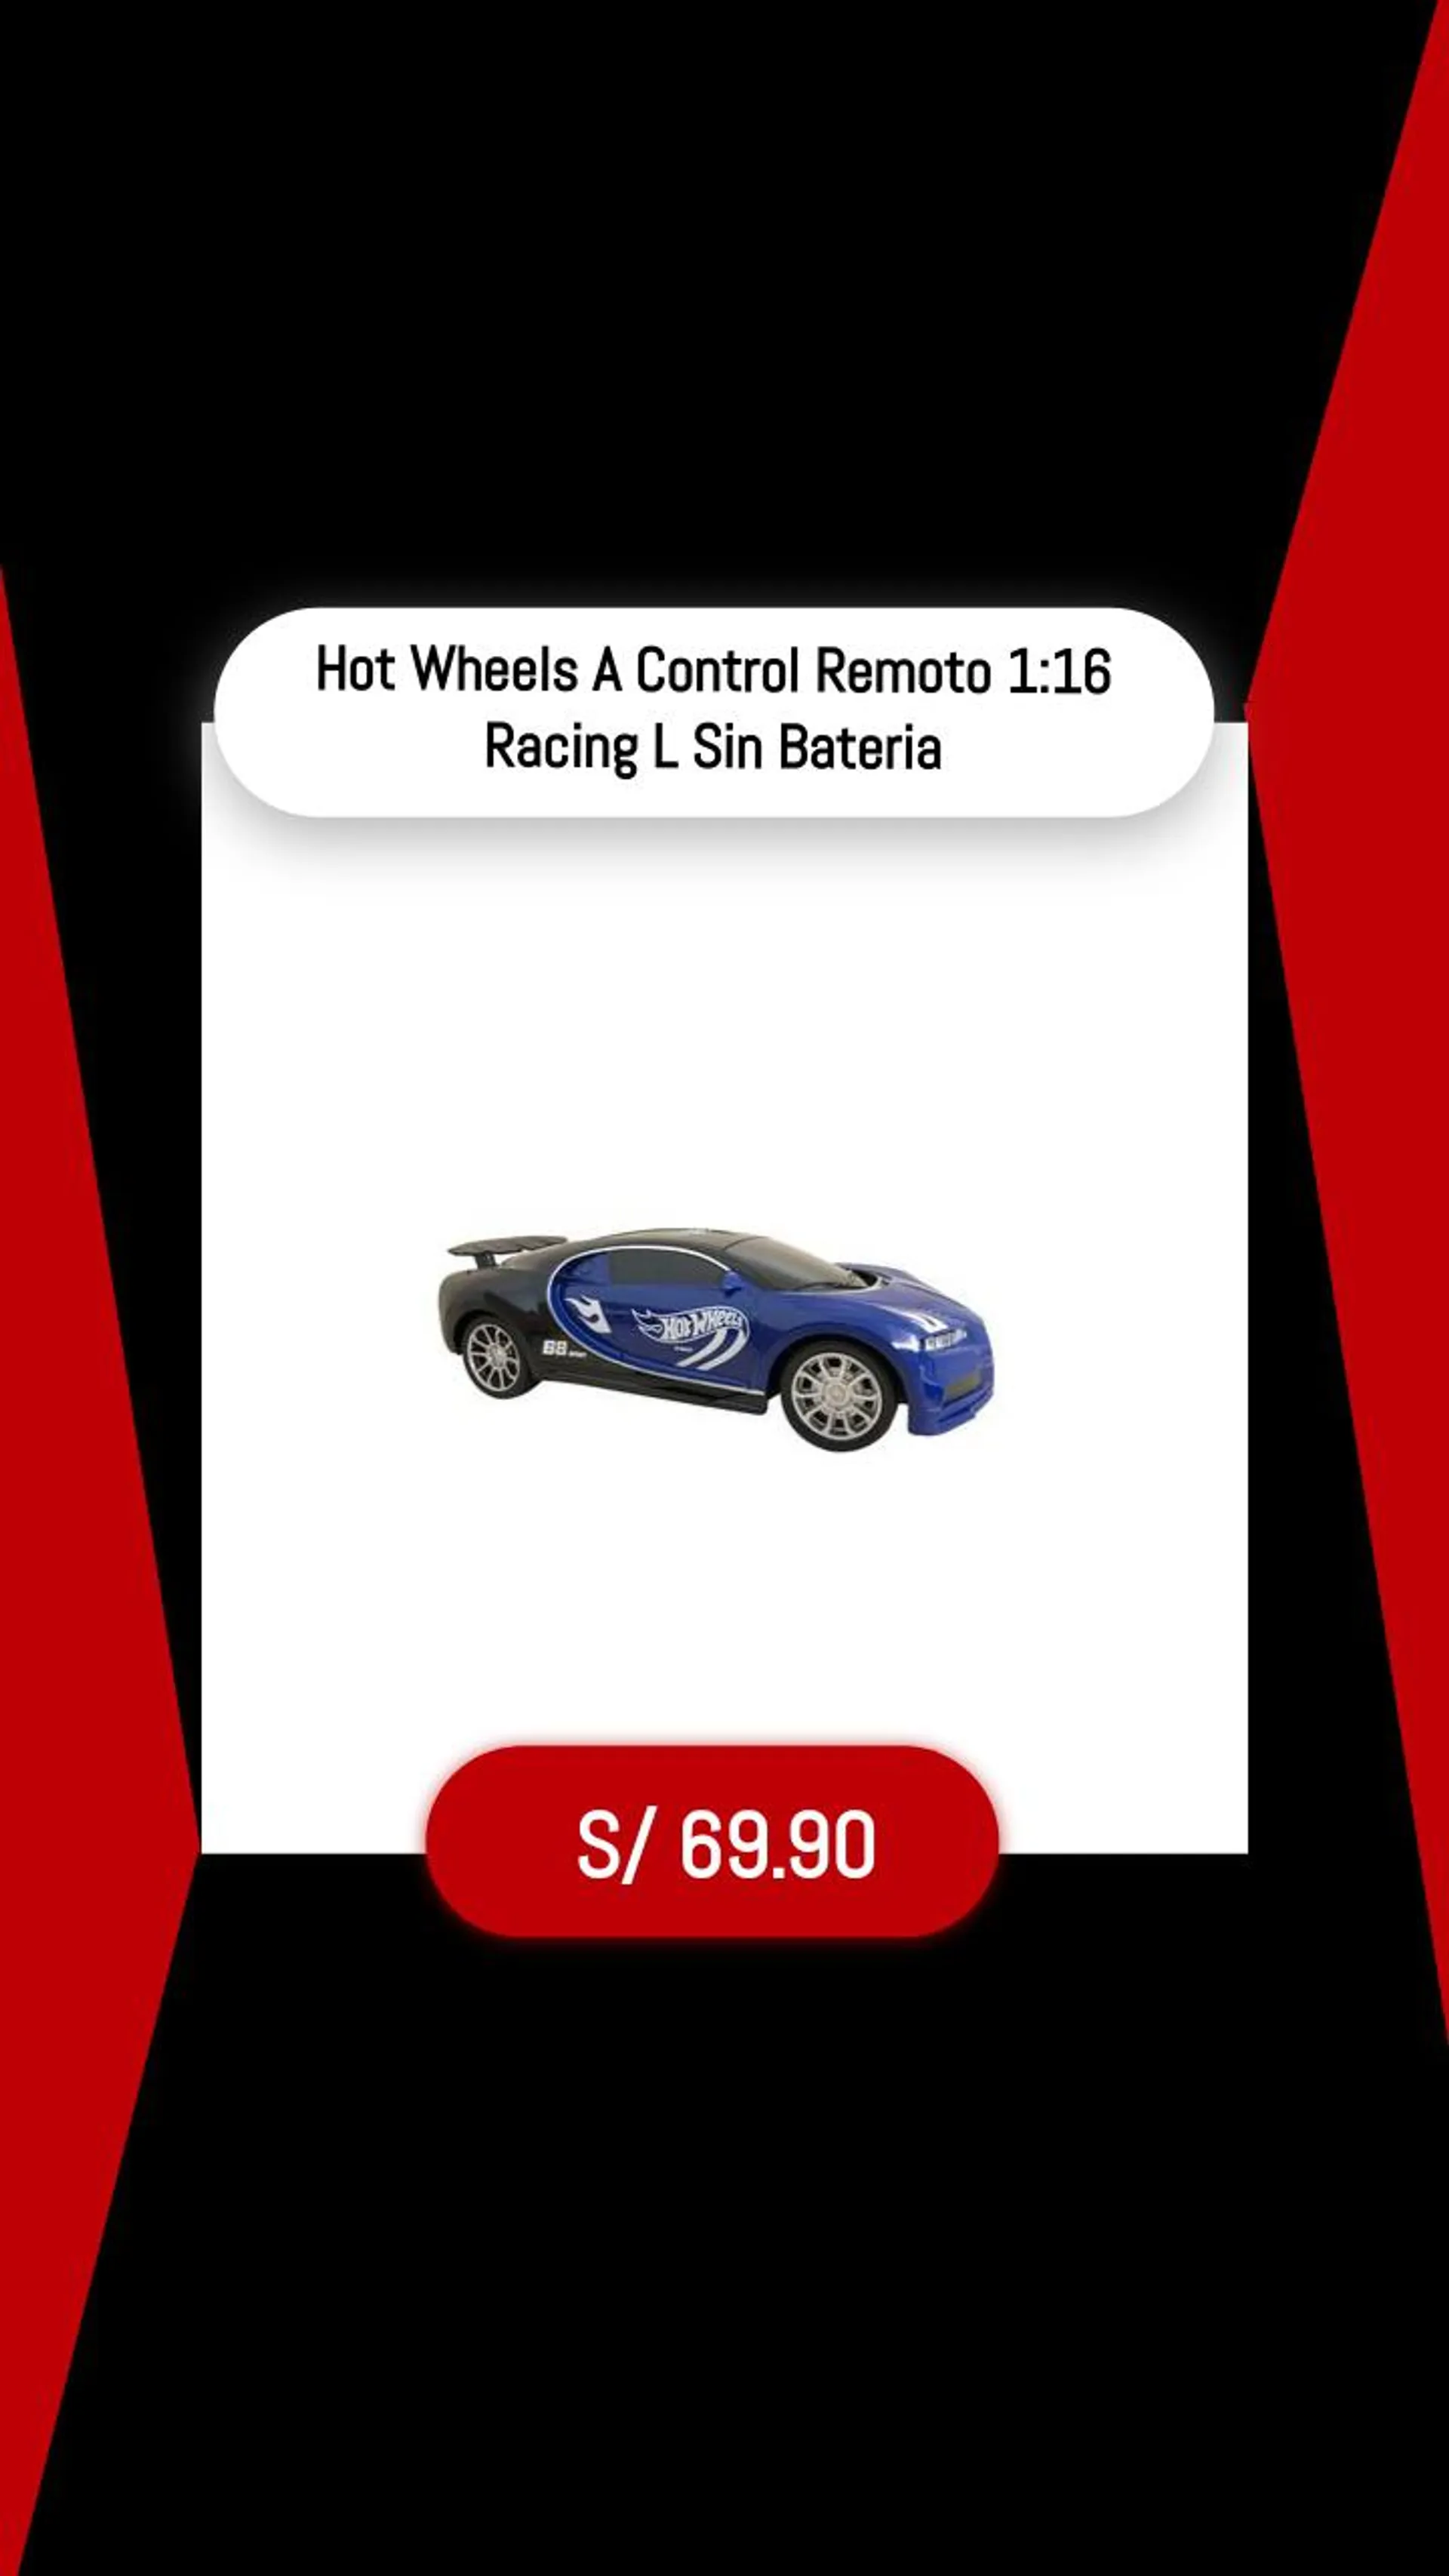 Hot Wheels A Control Remoto 1:16 Racing L Sin Bateria